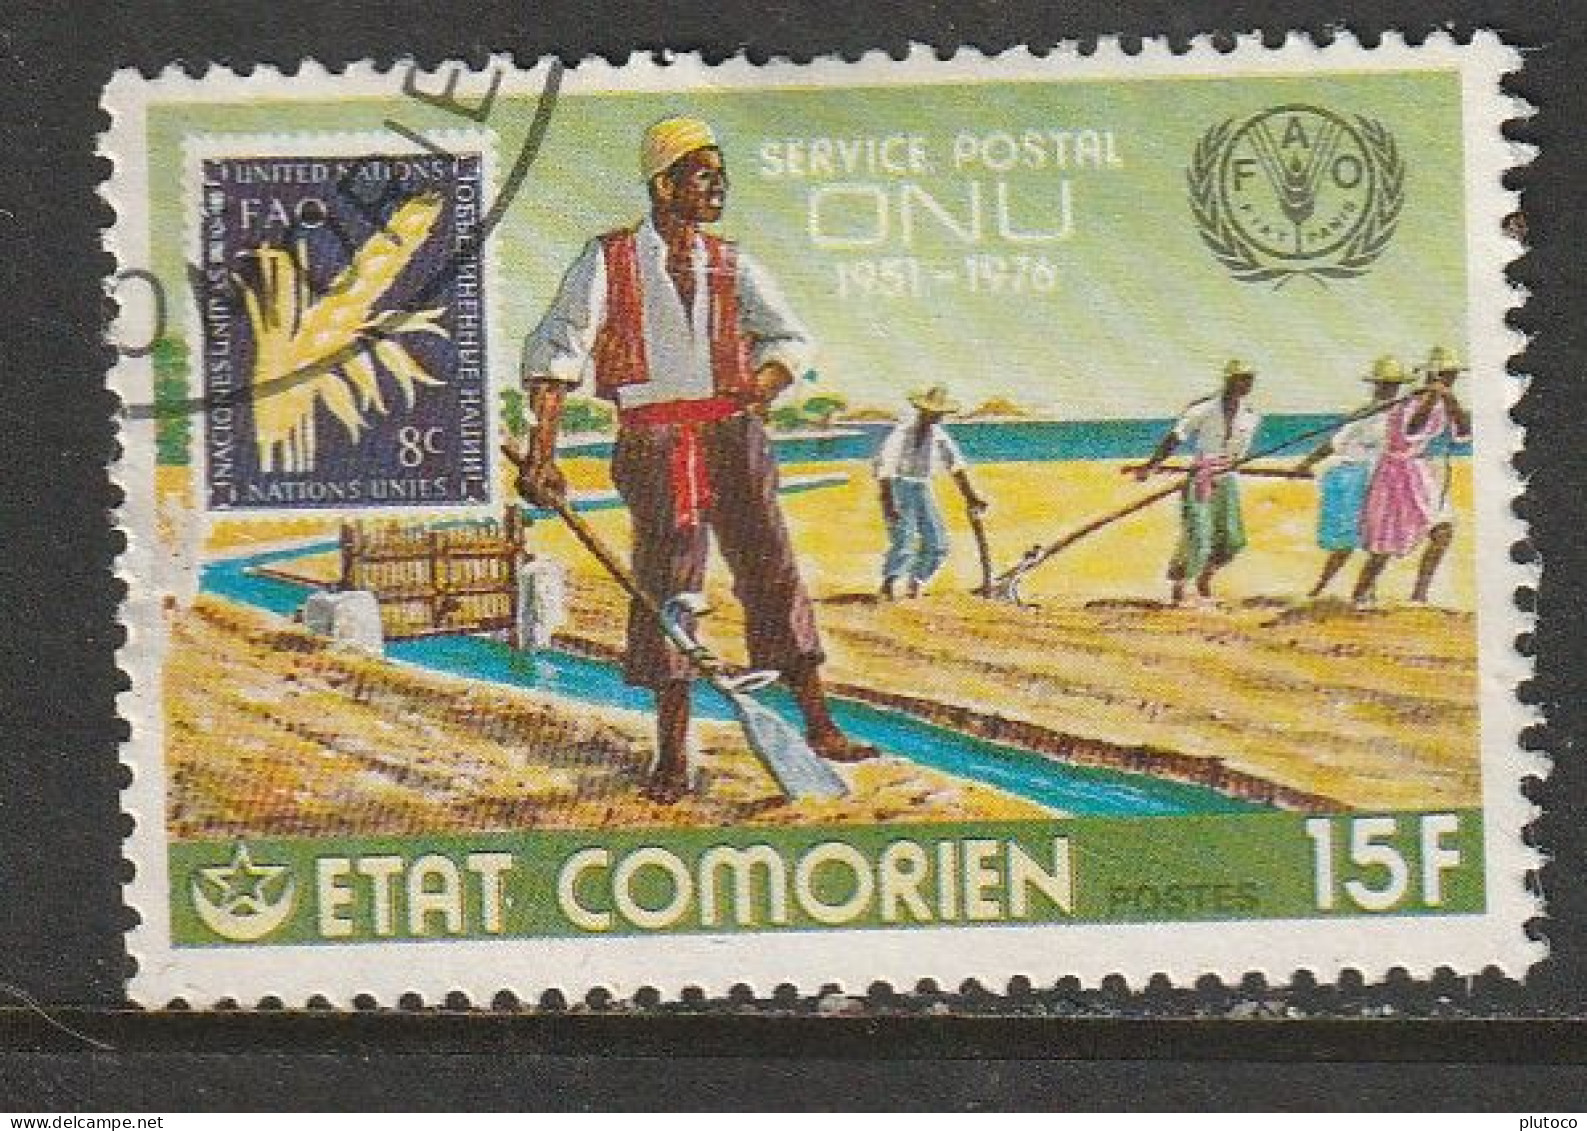 COMORES, USED STAMP, OBLITERÉ, SELLO USADO - Komoren (1975-...)